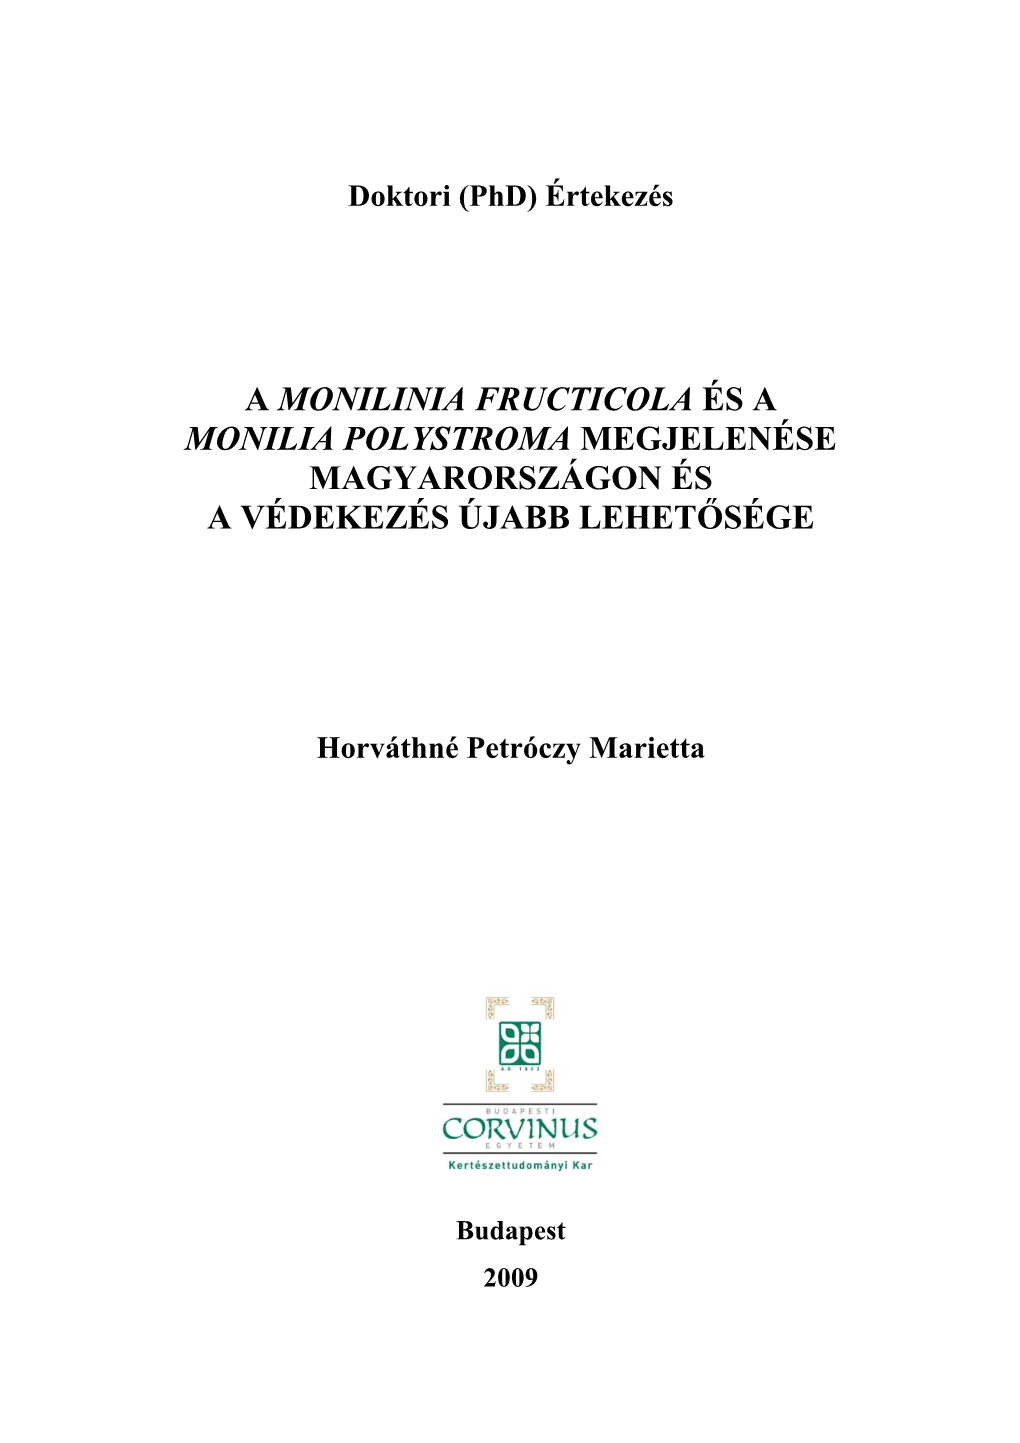 A Monilinia Fructicola És a Monilia Polystroma Megjelenése Magyarországon És a Védekezés Újabb Lehetősége